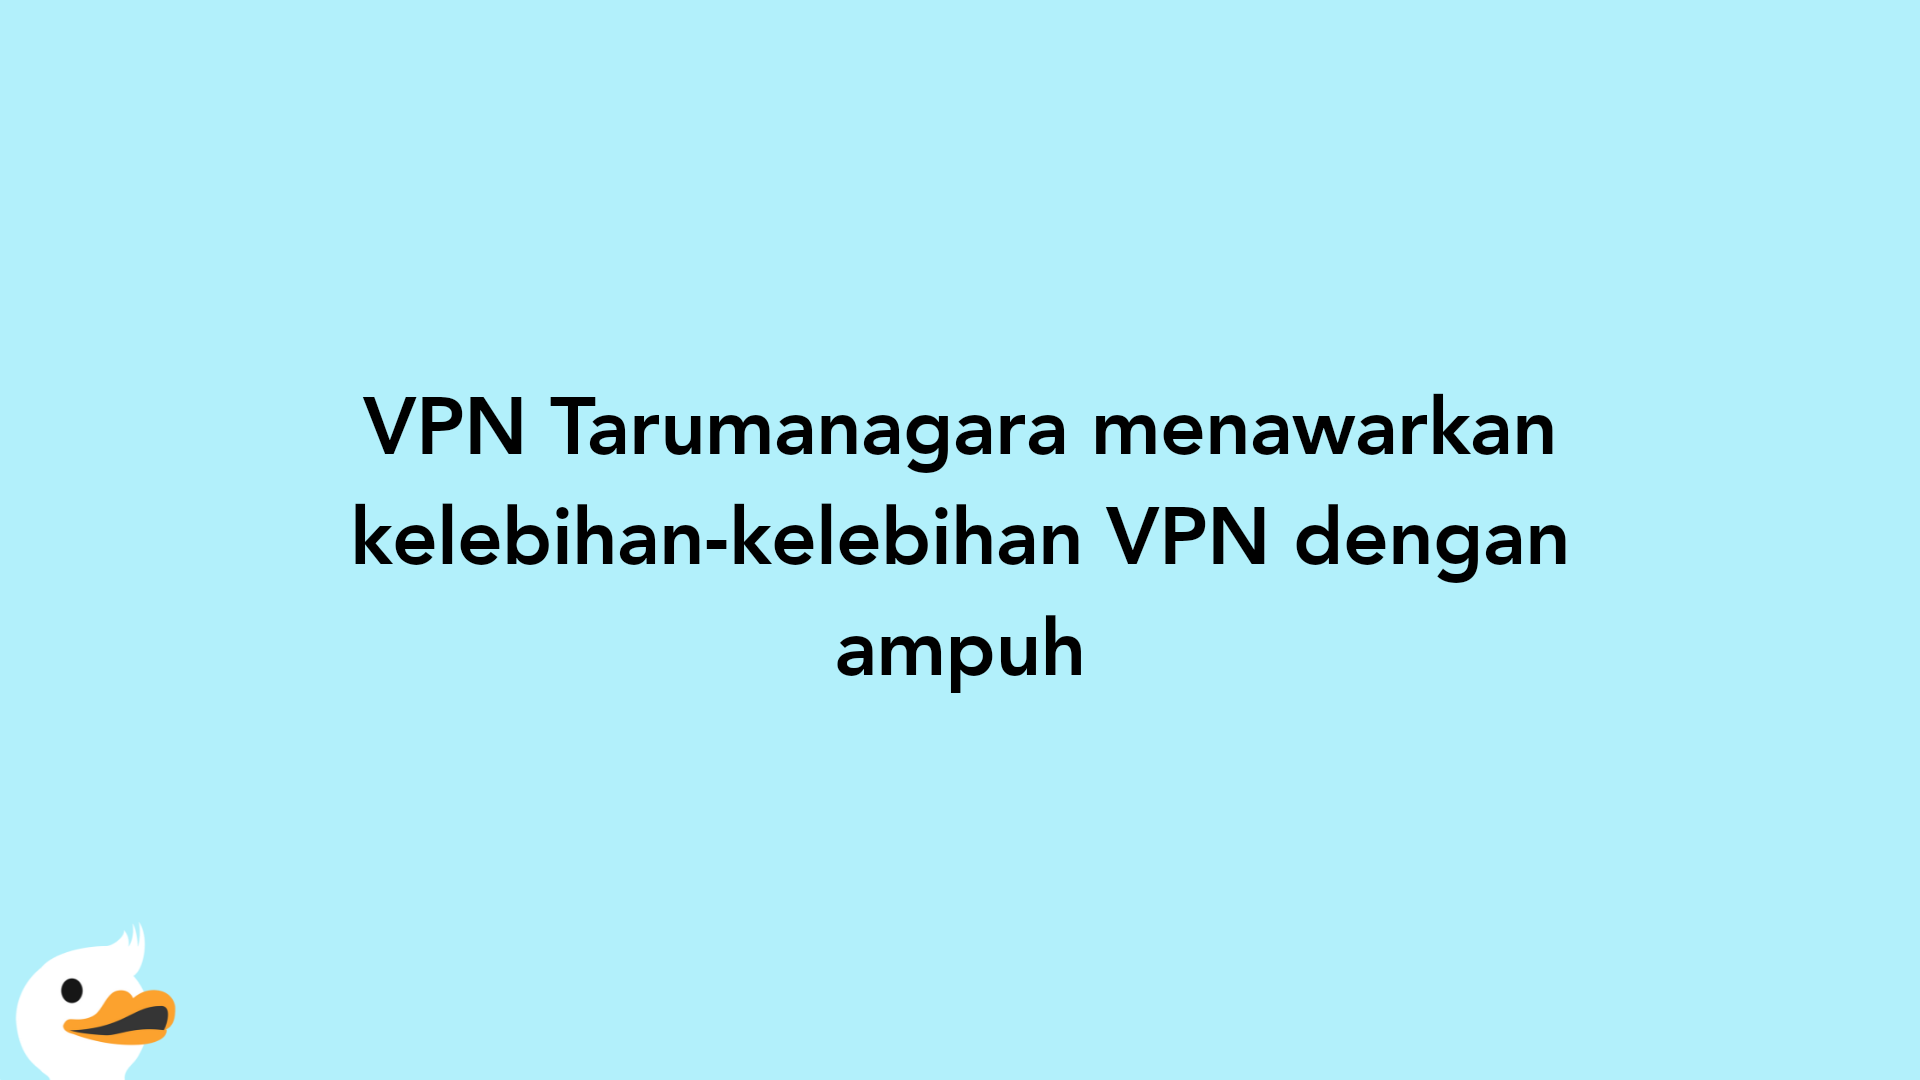 VPN Tarumanagara menawarkan kelebihan-kelebihan VPN dengan ampuh